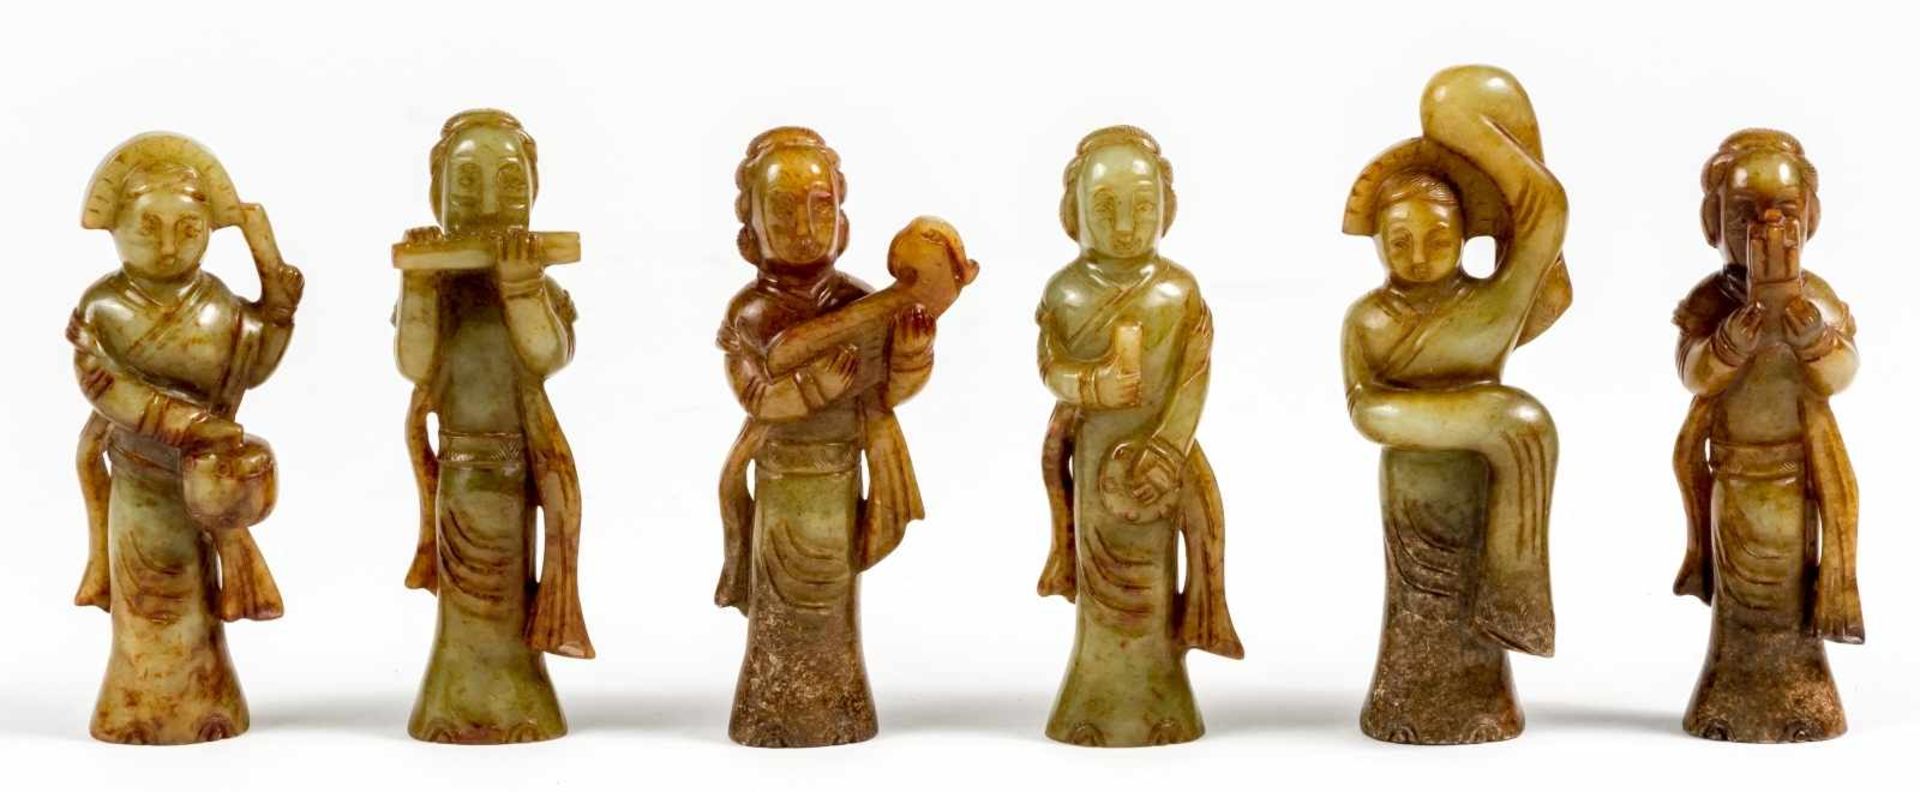 Sechs chinesische Musiker-Figuren aus Jadezwischen 9,5 und 10,5 cm hochProvenienz: Privatsammlung